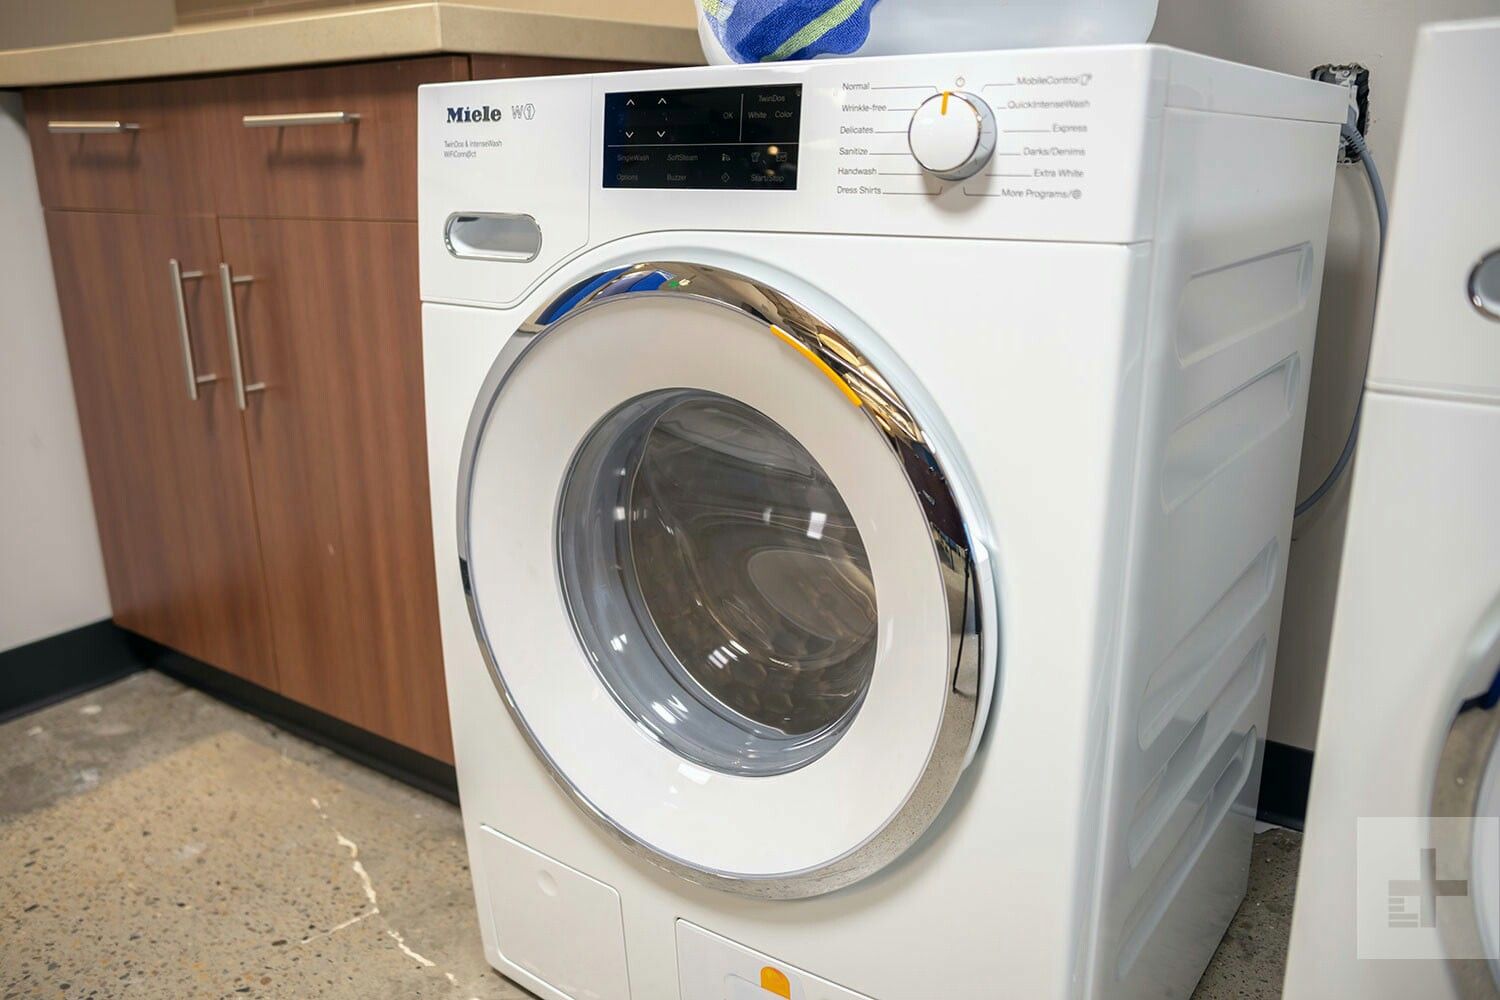 MieleWWH860 Washing machine